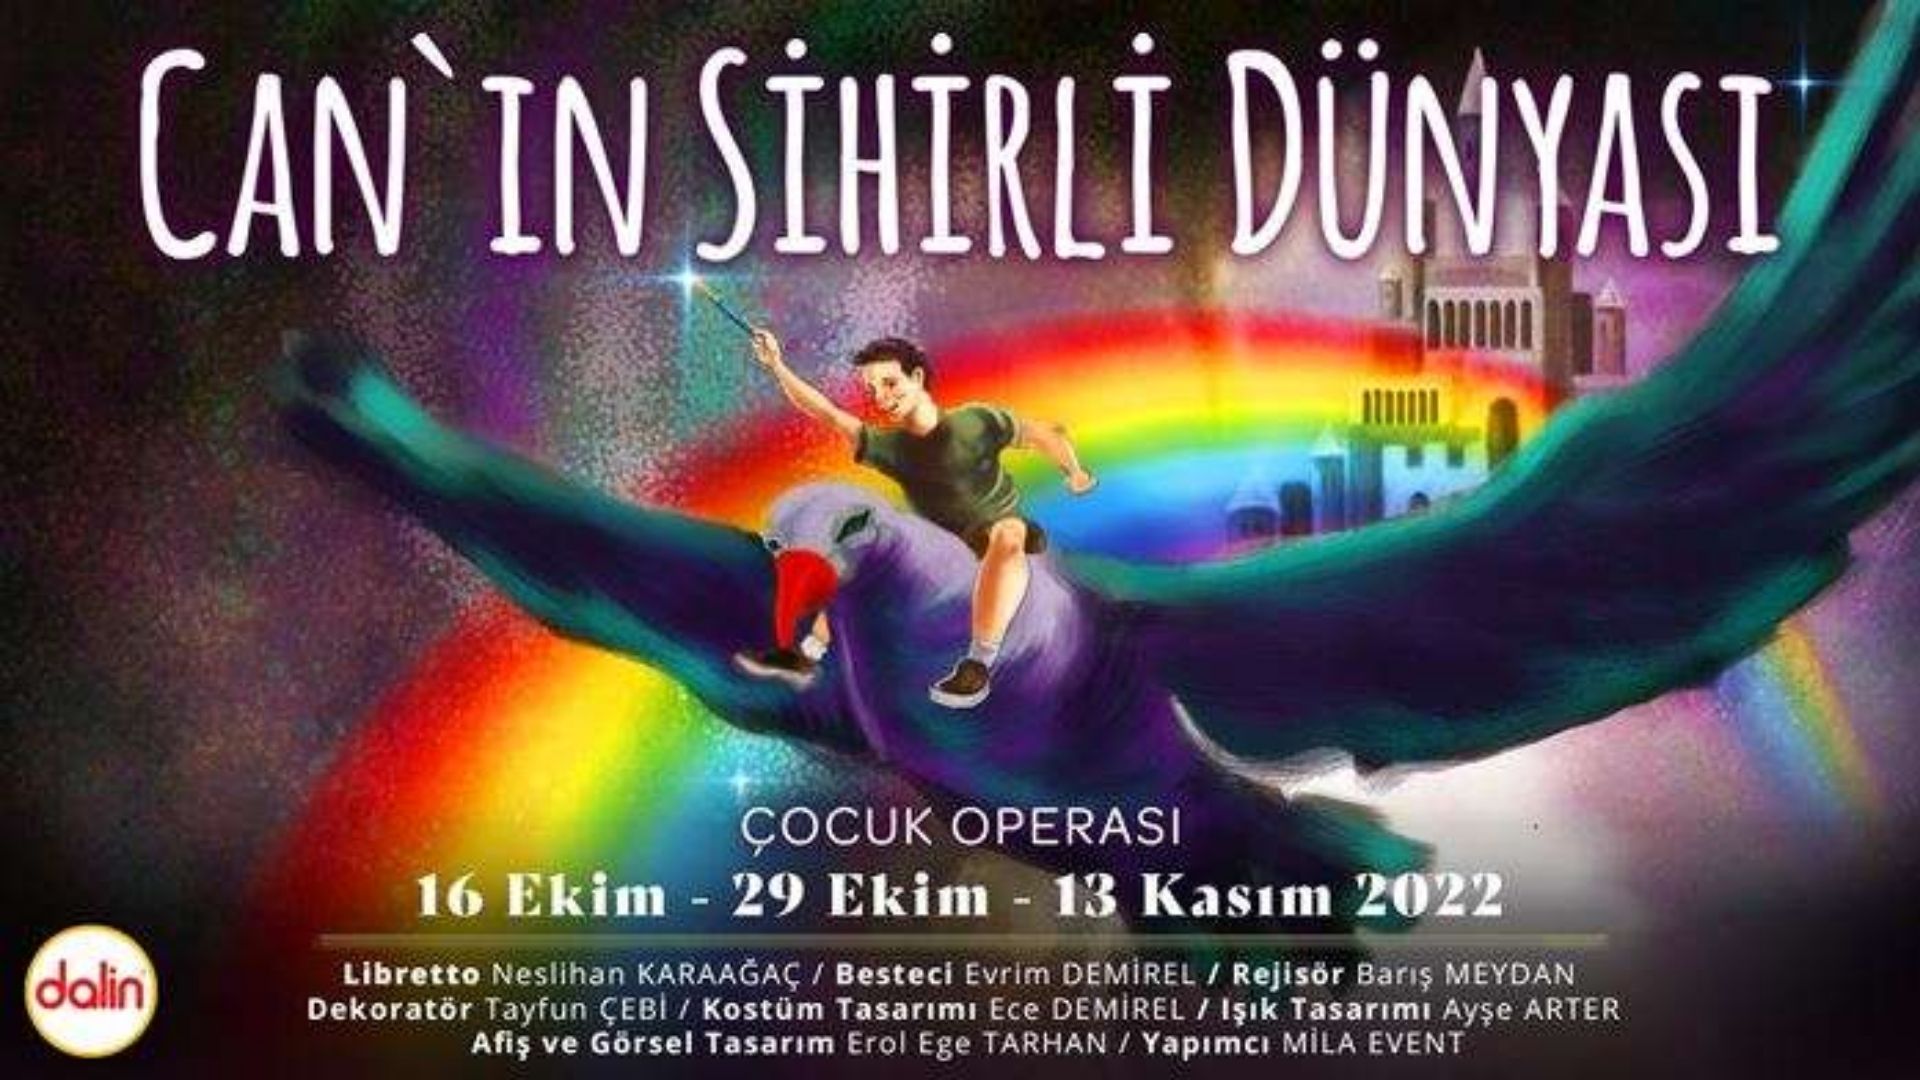 canin sihirli dunyasi istanbul'da konser ve tiyatro oyunlari